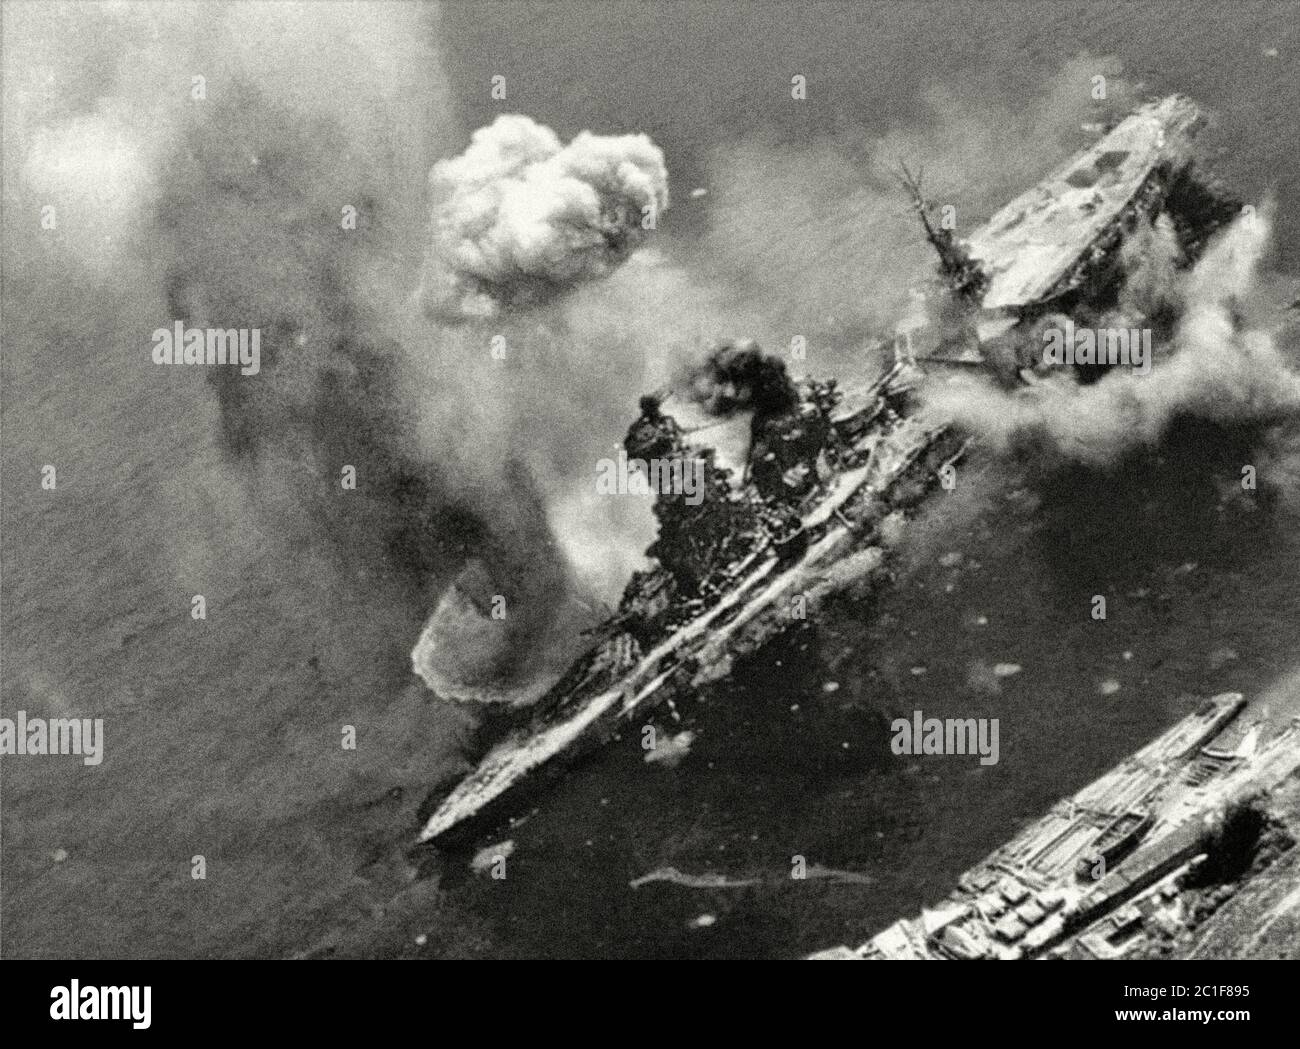 La imagen muestra la ruptura de una bomba americana cerca del lado de estribor del acorazado japonés Ise, reconstruido en un portador de hidroaviones. Kure, J. Foto de stock